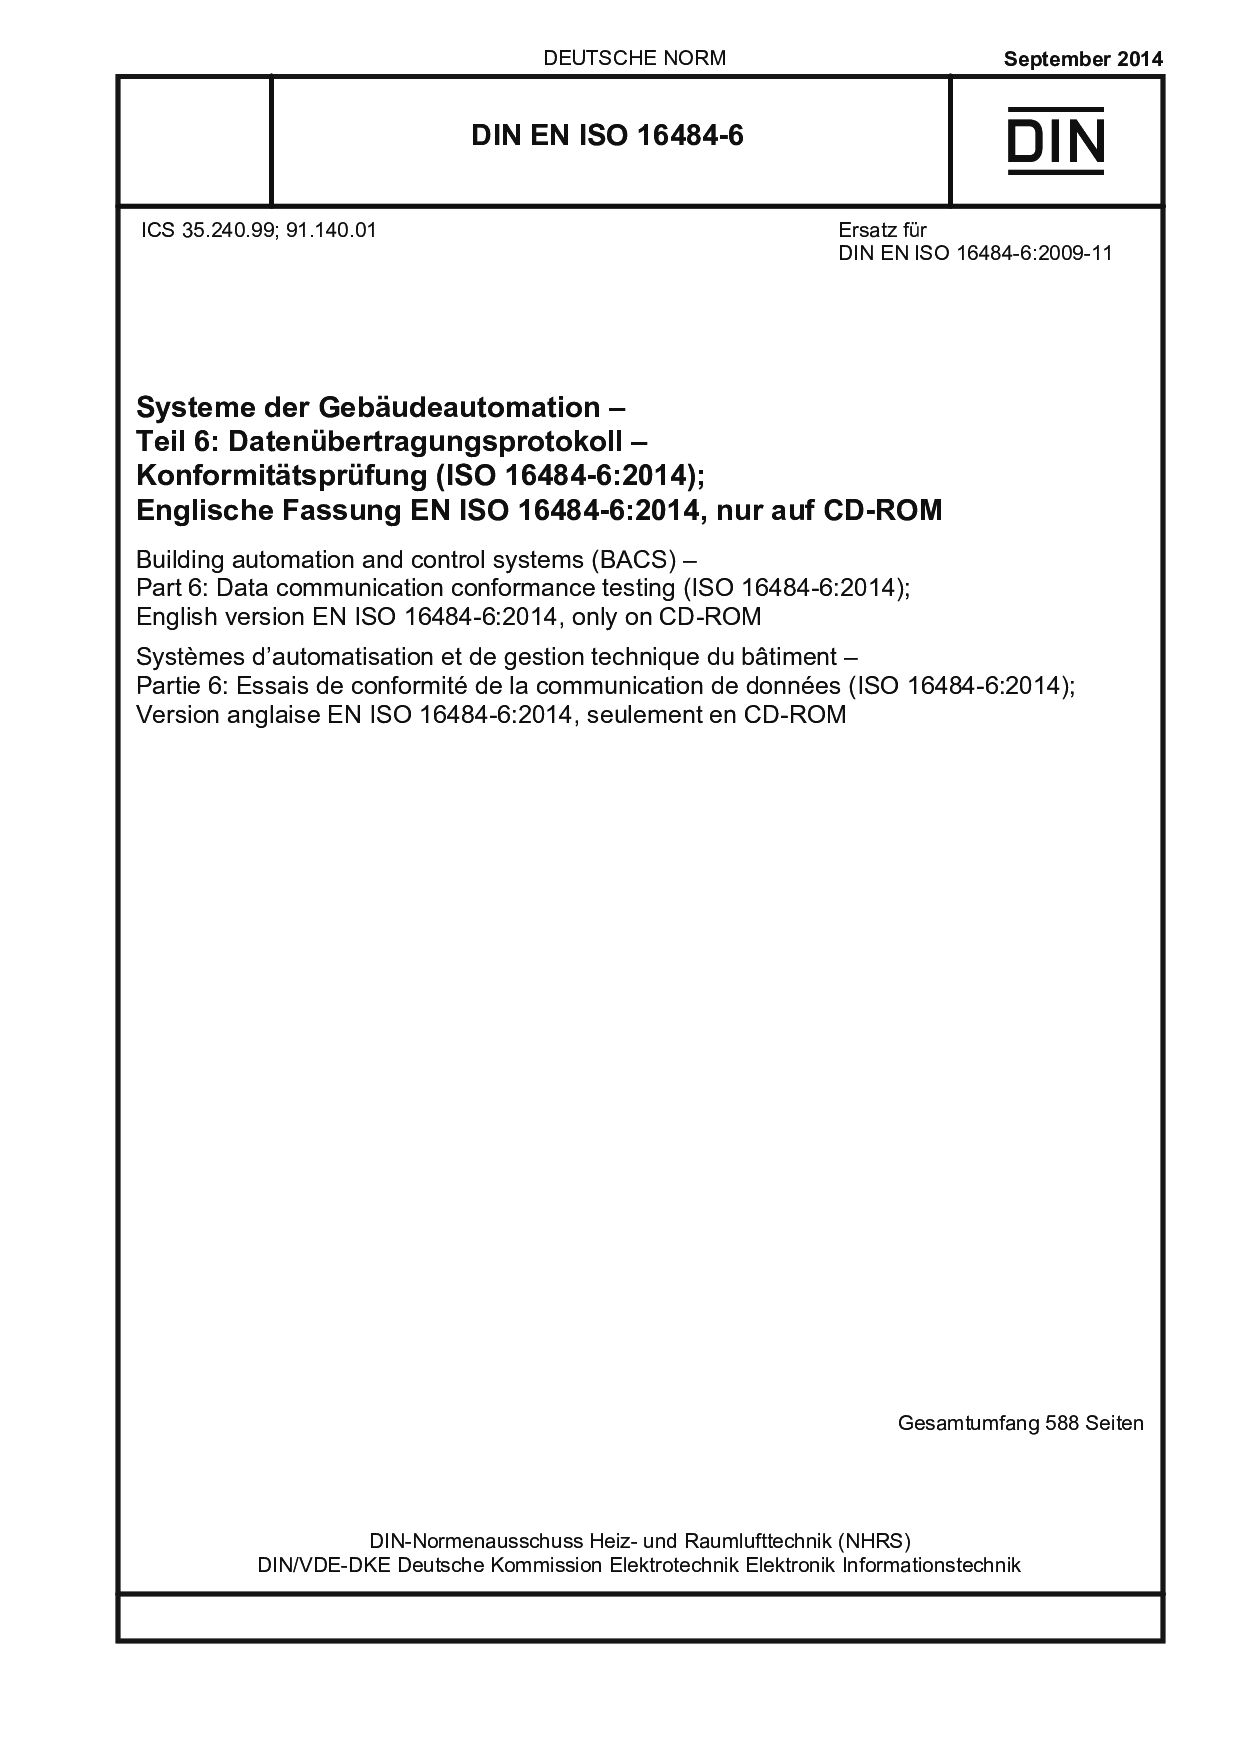 DIN EN ISO 16484-6:2014